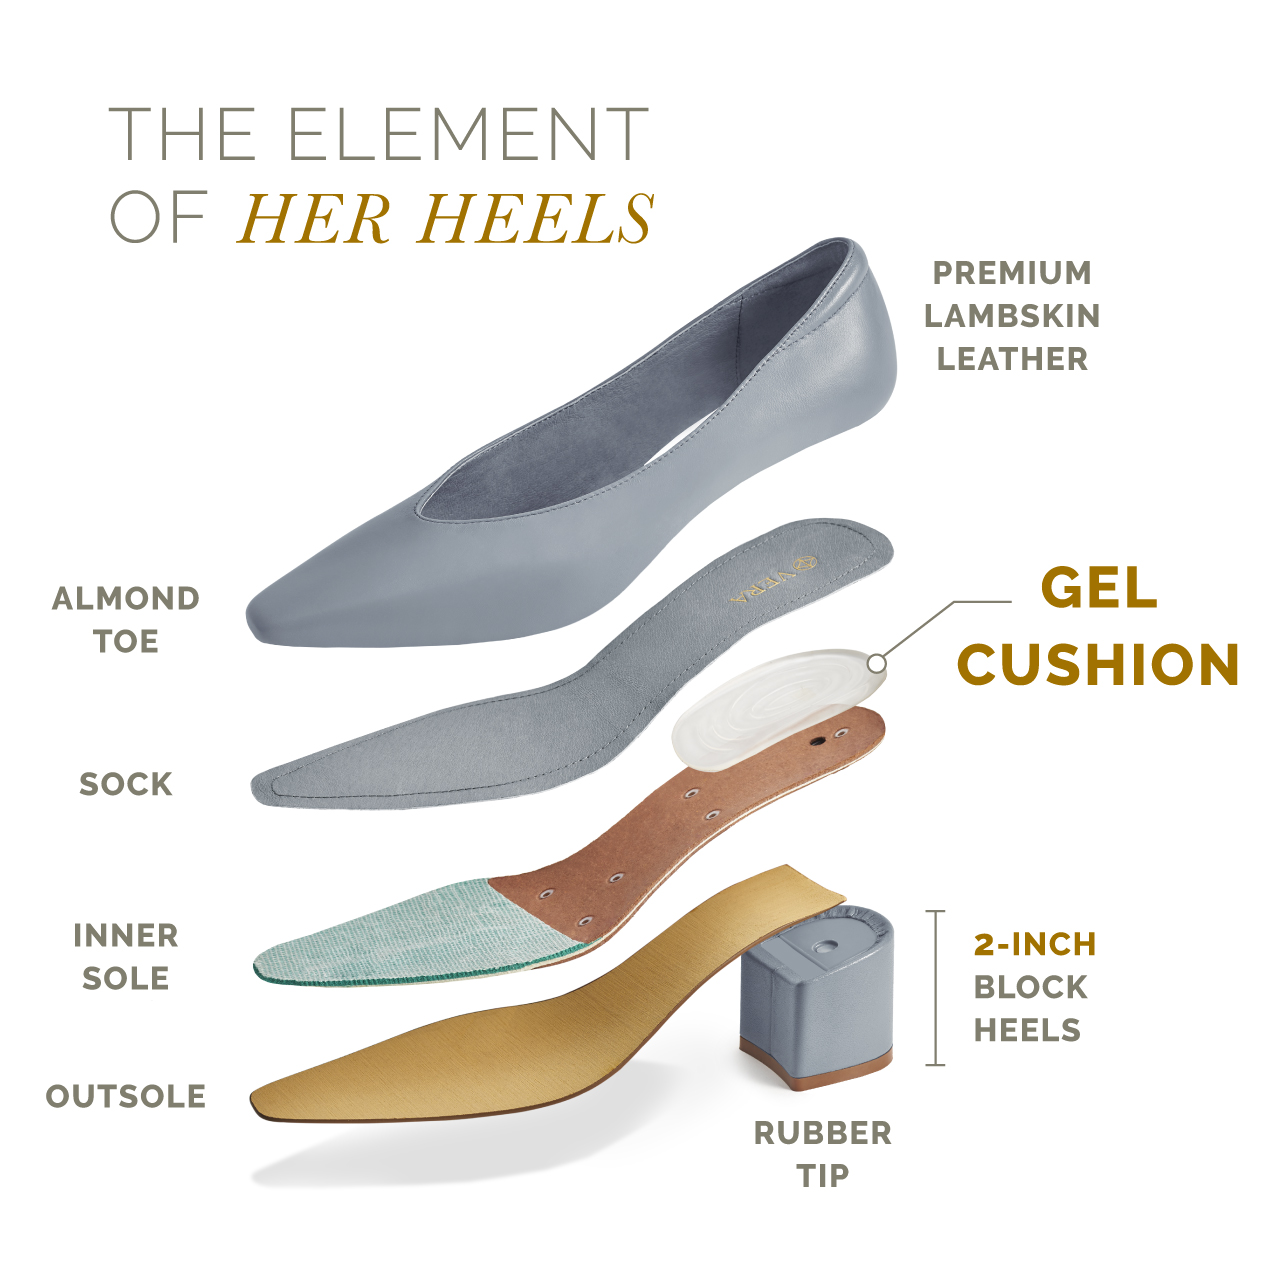 Elements of Her Heels